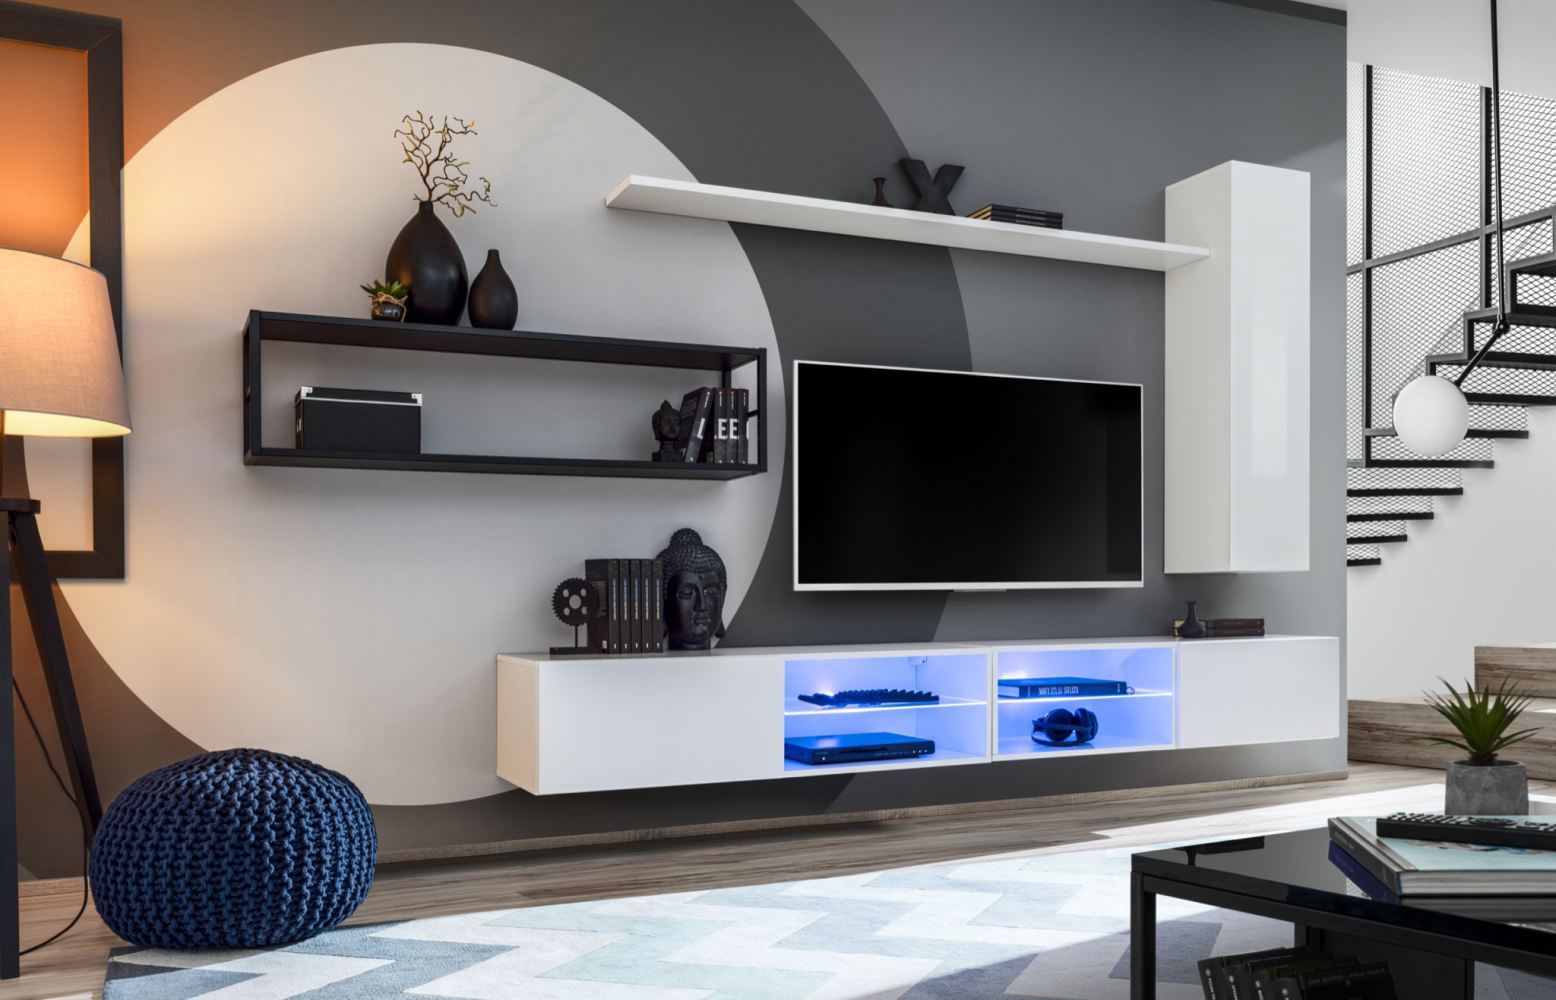 Parete soggiorno semplice Valand 13, colore: bianco / nero - Dimensioni: 170 x 300 x 40 cm (A x L x P), con due basi TV